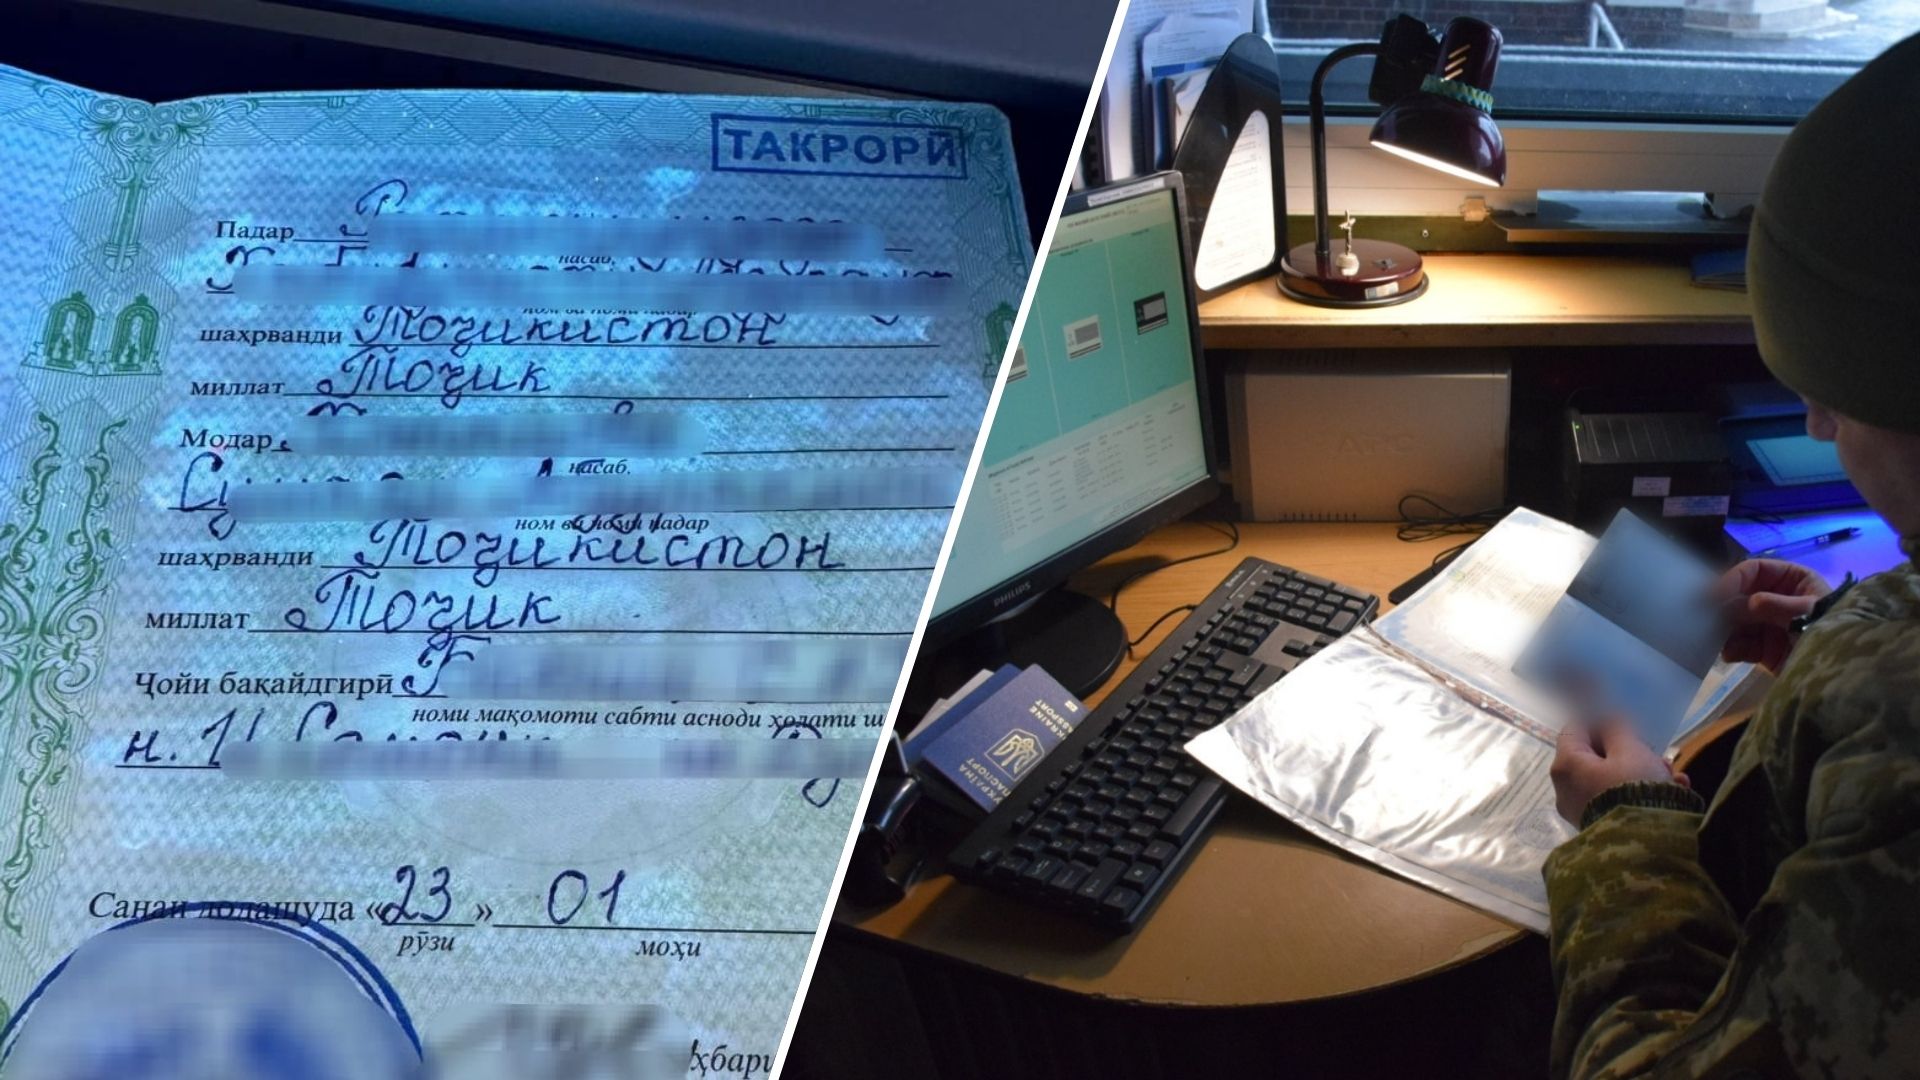 У пункті пропуску “Ужгород” прикордонники викрили громадянина України, який намагався виїхати за кордон за допомогою підроблених документів.